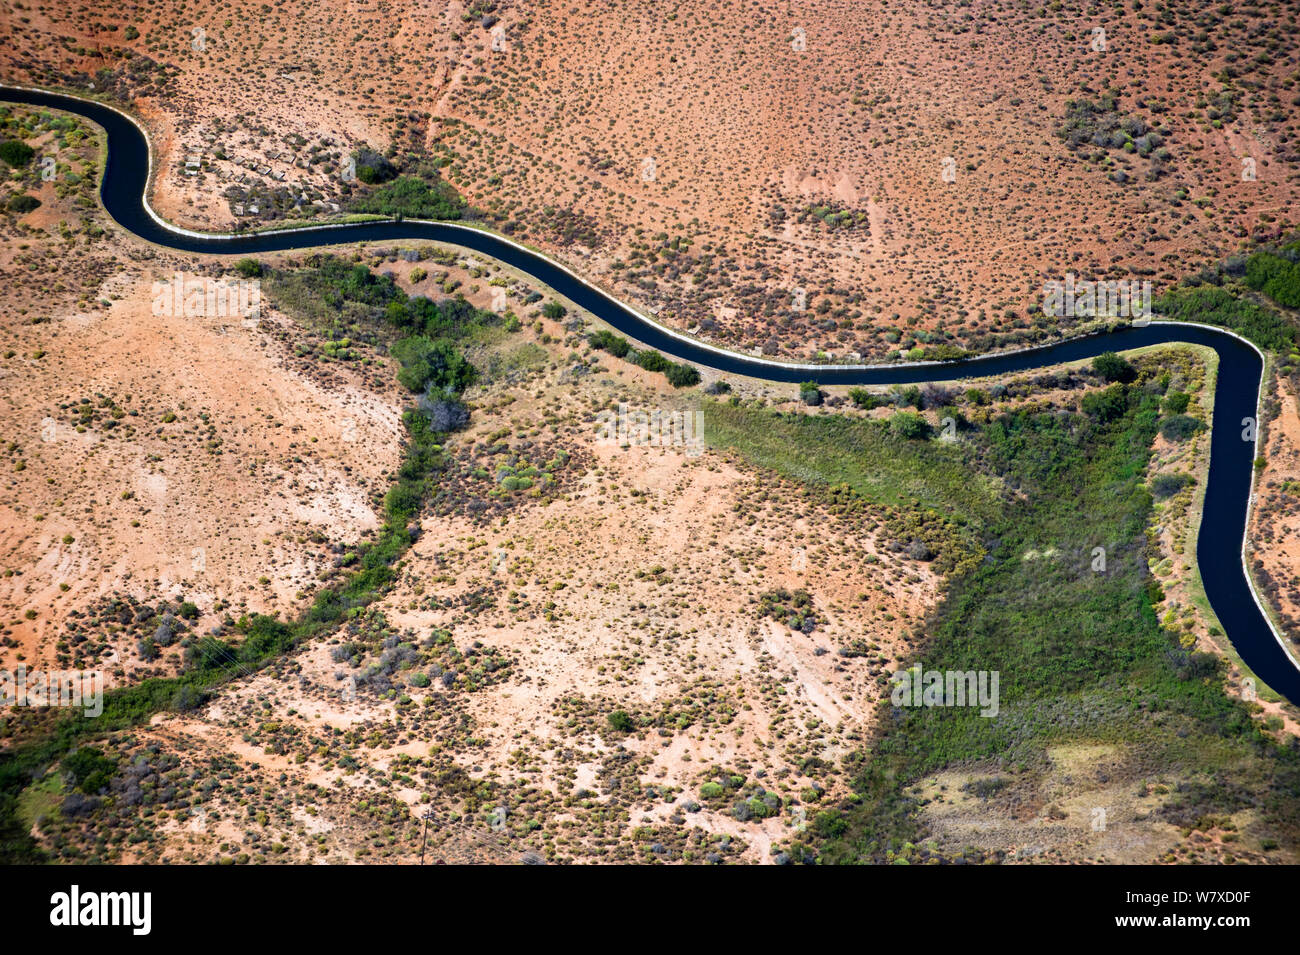 Photo aérienne de l'Olifants River et de l'irrigation intensive / canal système utilisé sur son cours, une menace pour l'espèce de poissons endémiques trouvées ici. Citrusdal et zone de Clanwilliam, Western Cape, Afrique du Sud. Décembre 2013. Banque D'Images